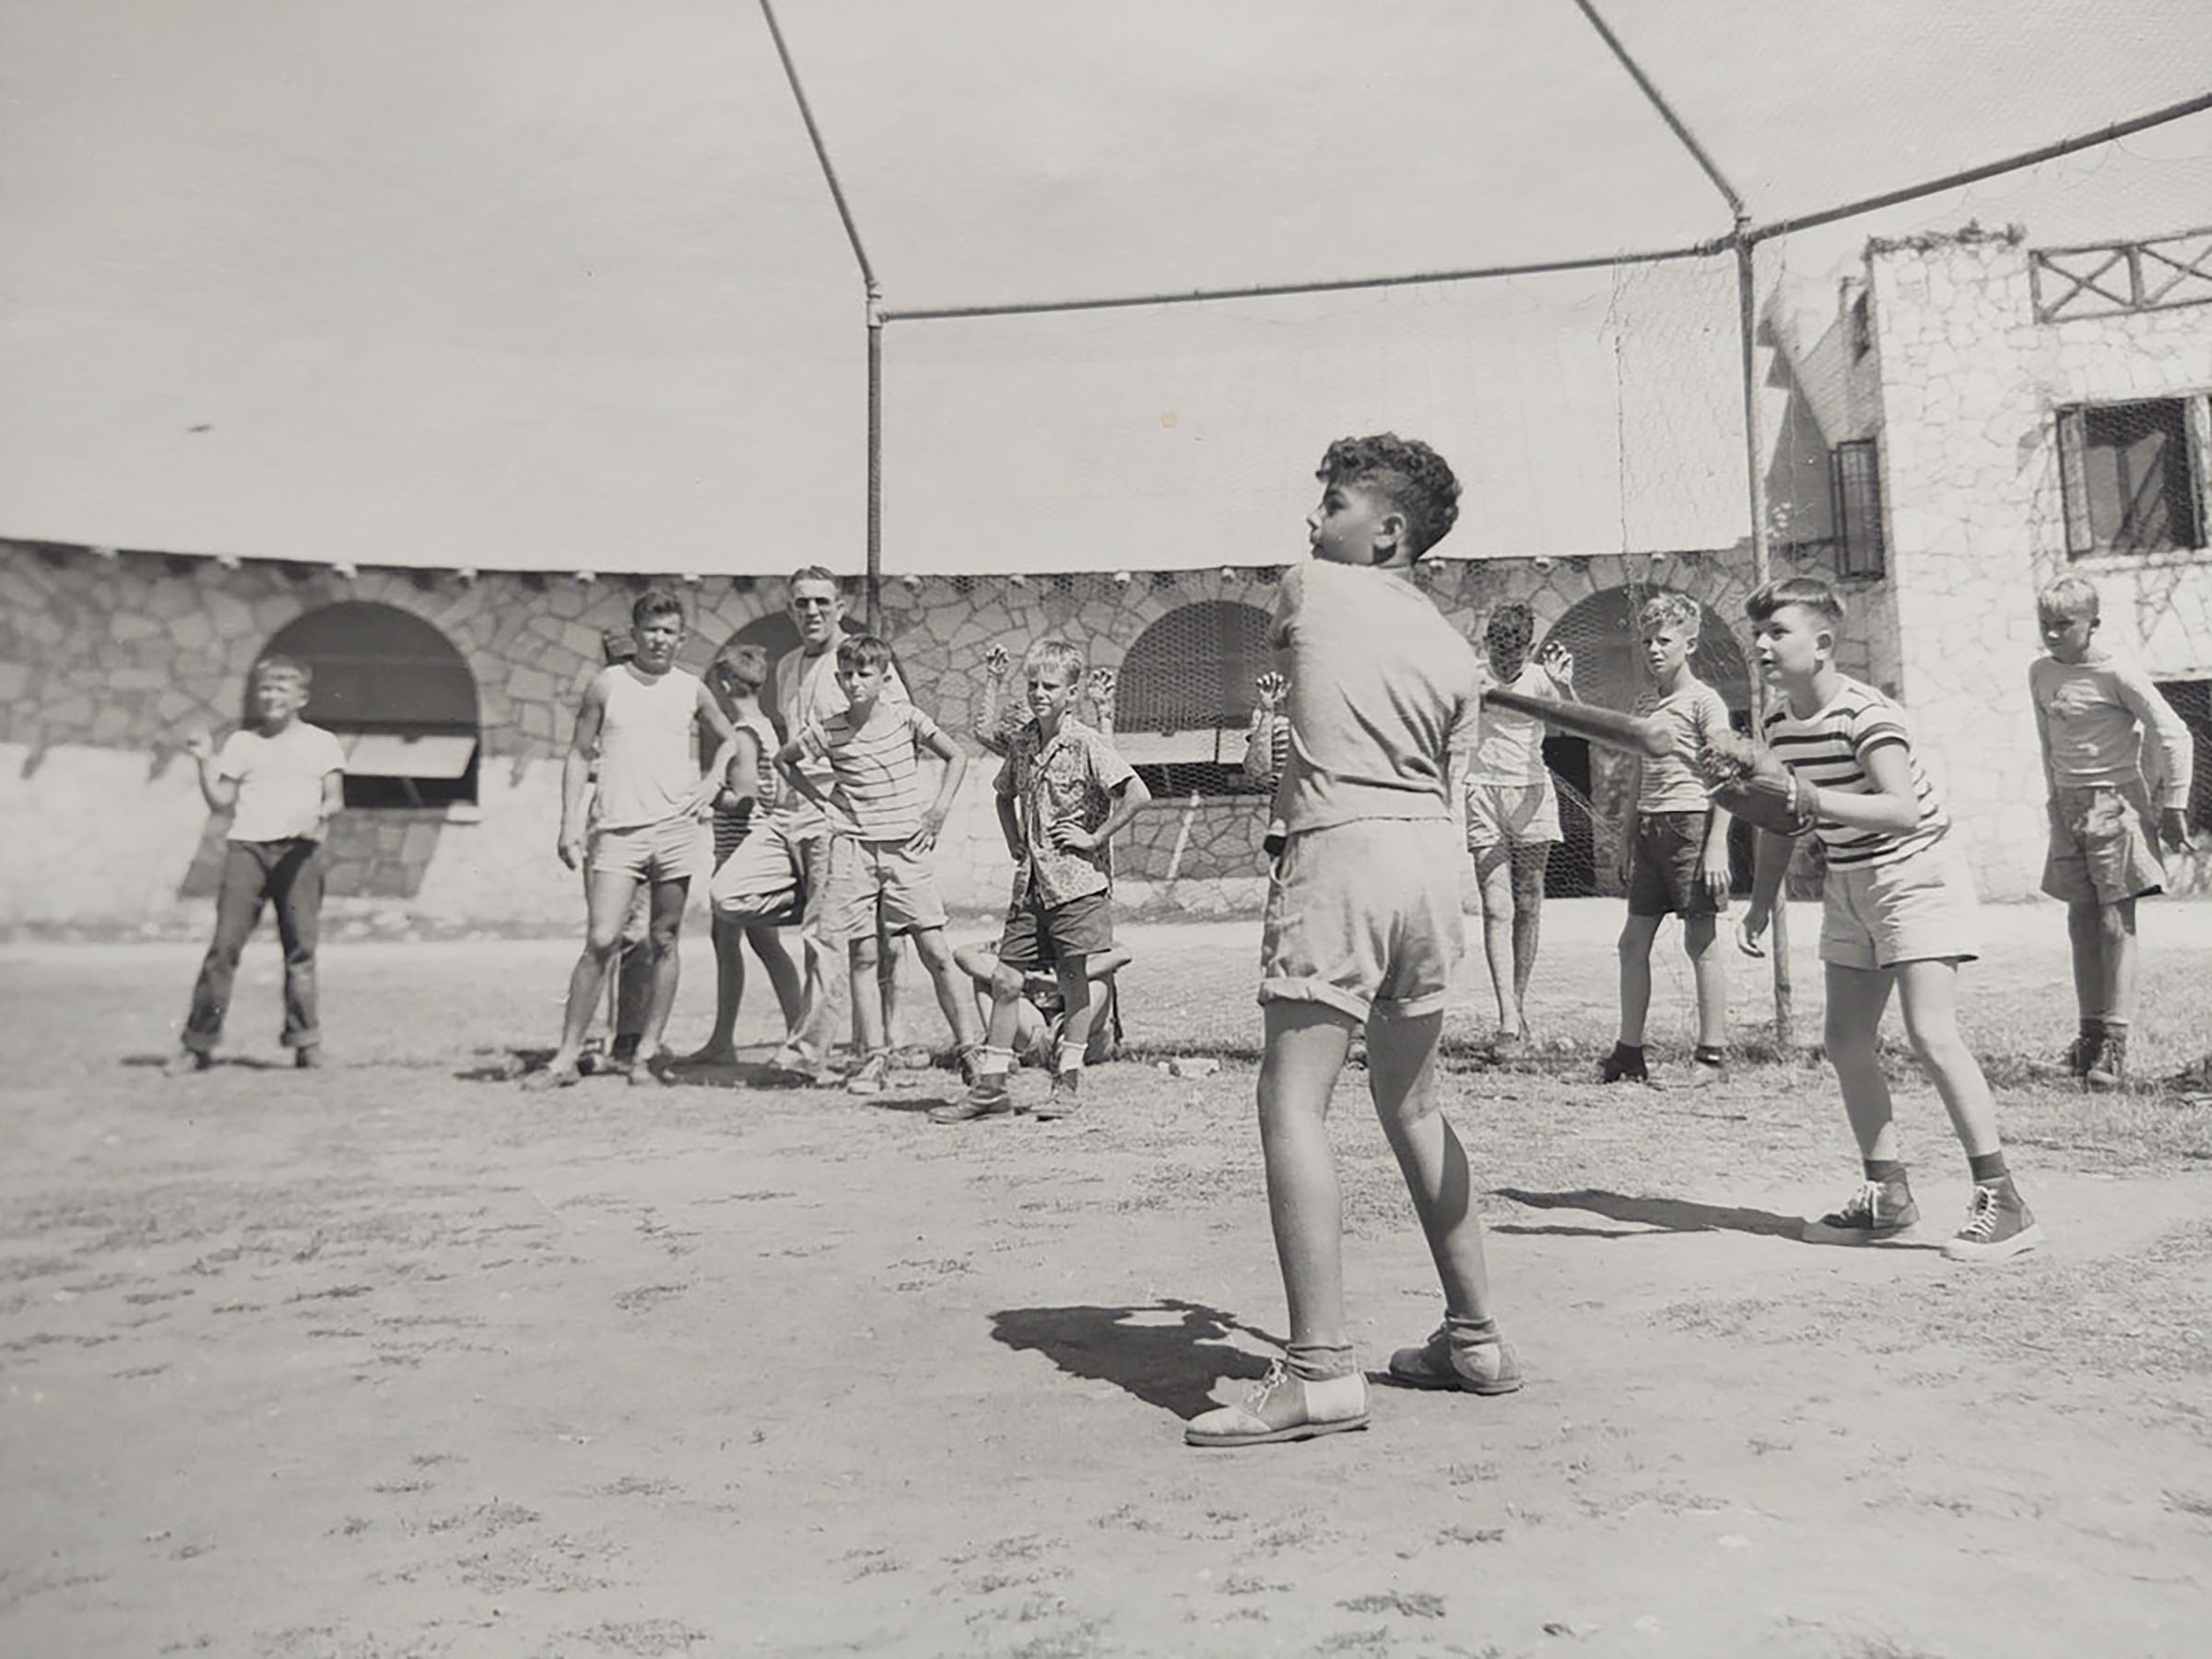 Vintage photo of boys playing baseball at summer camp